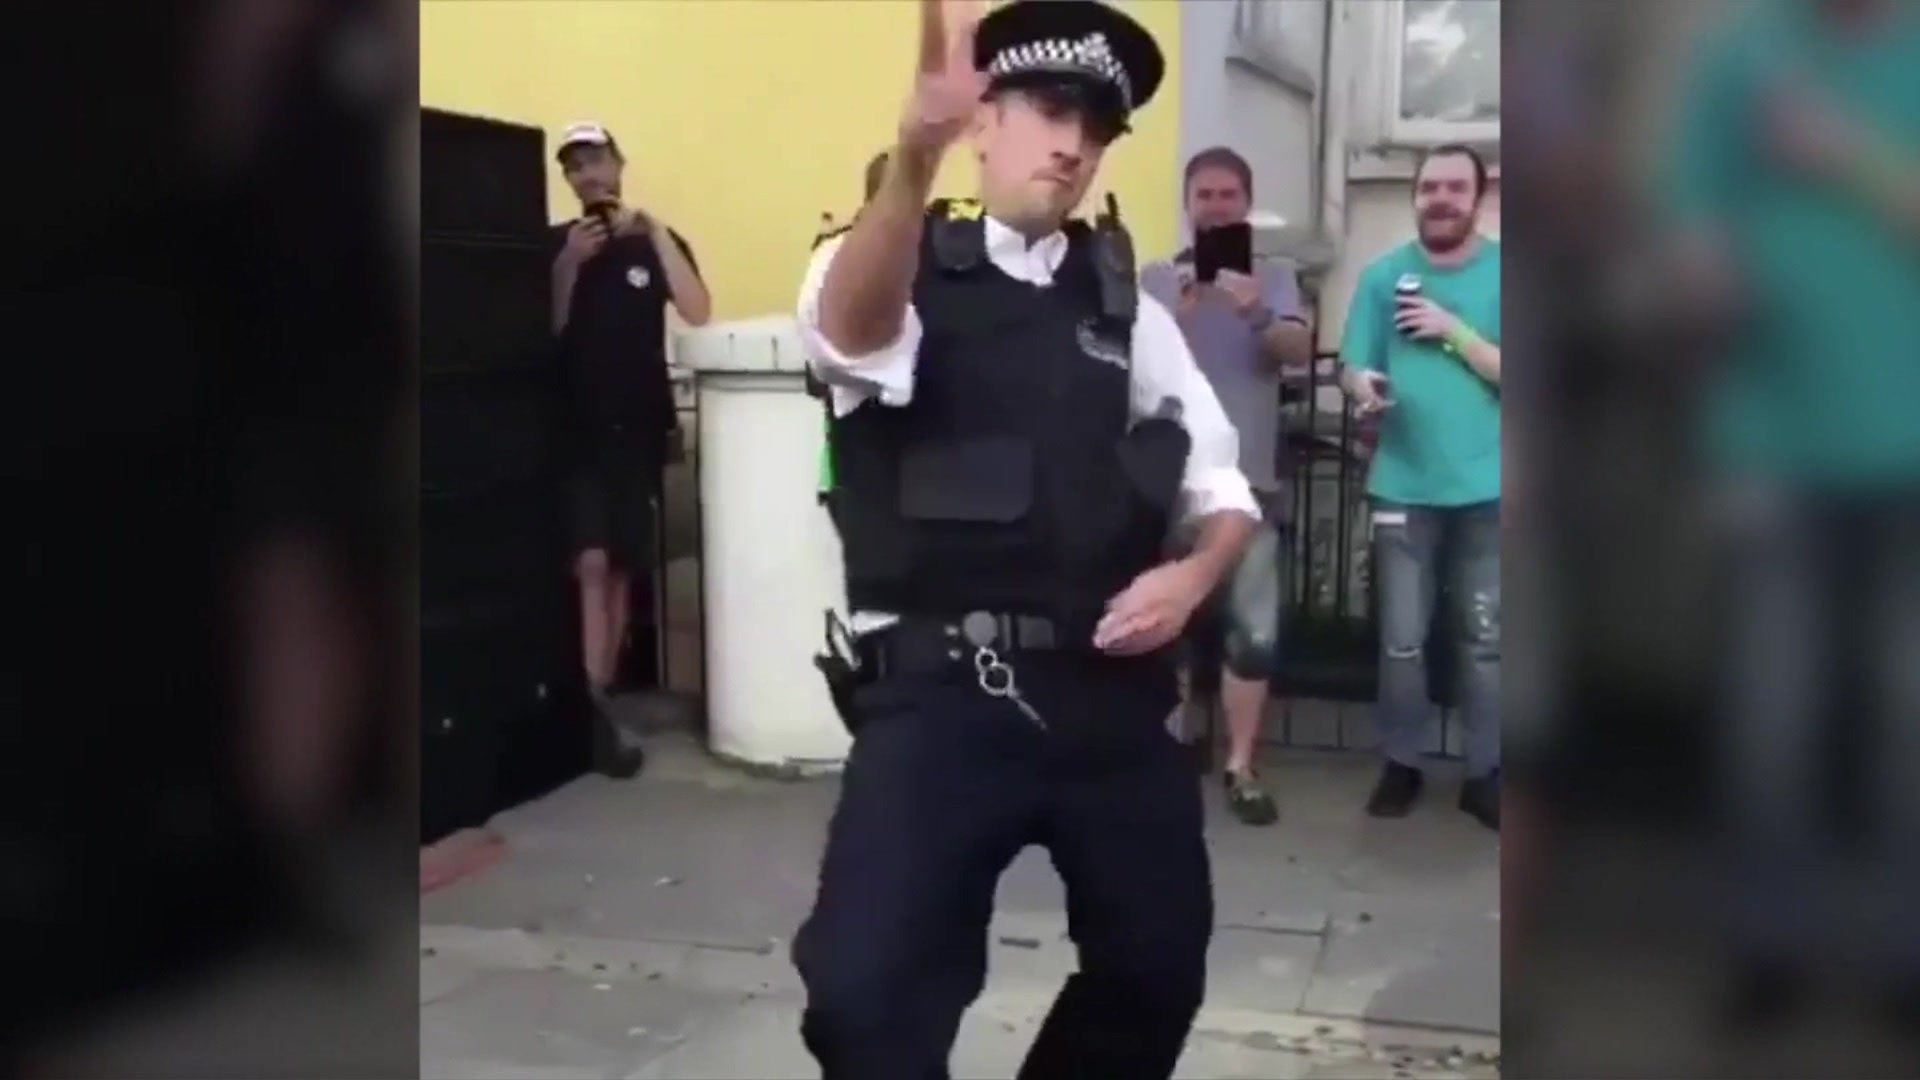 Dance policemen